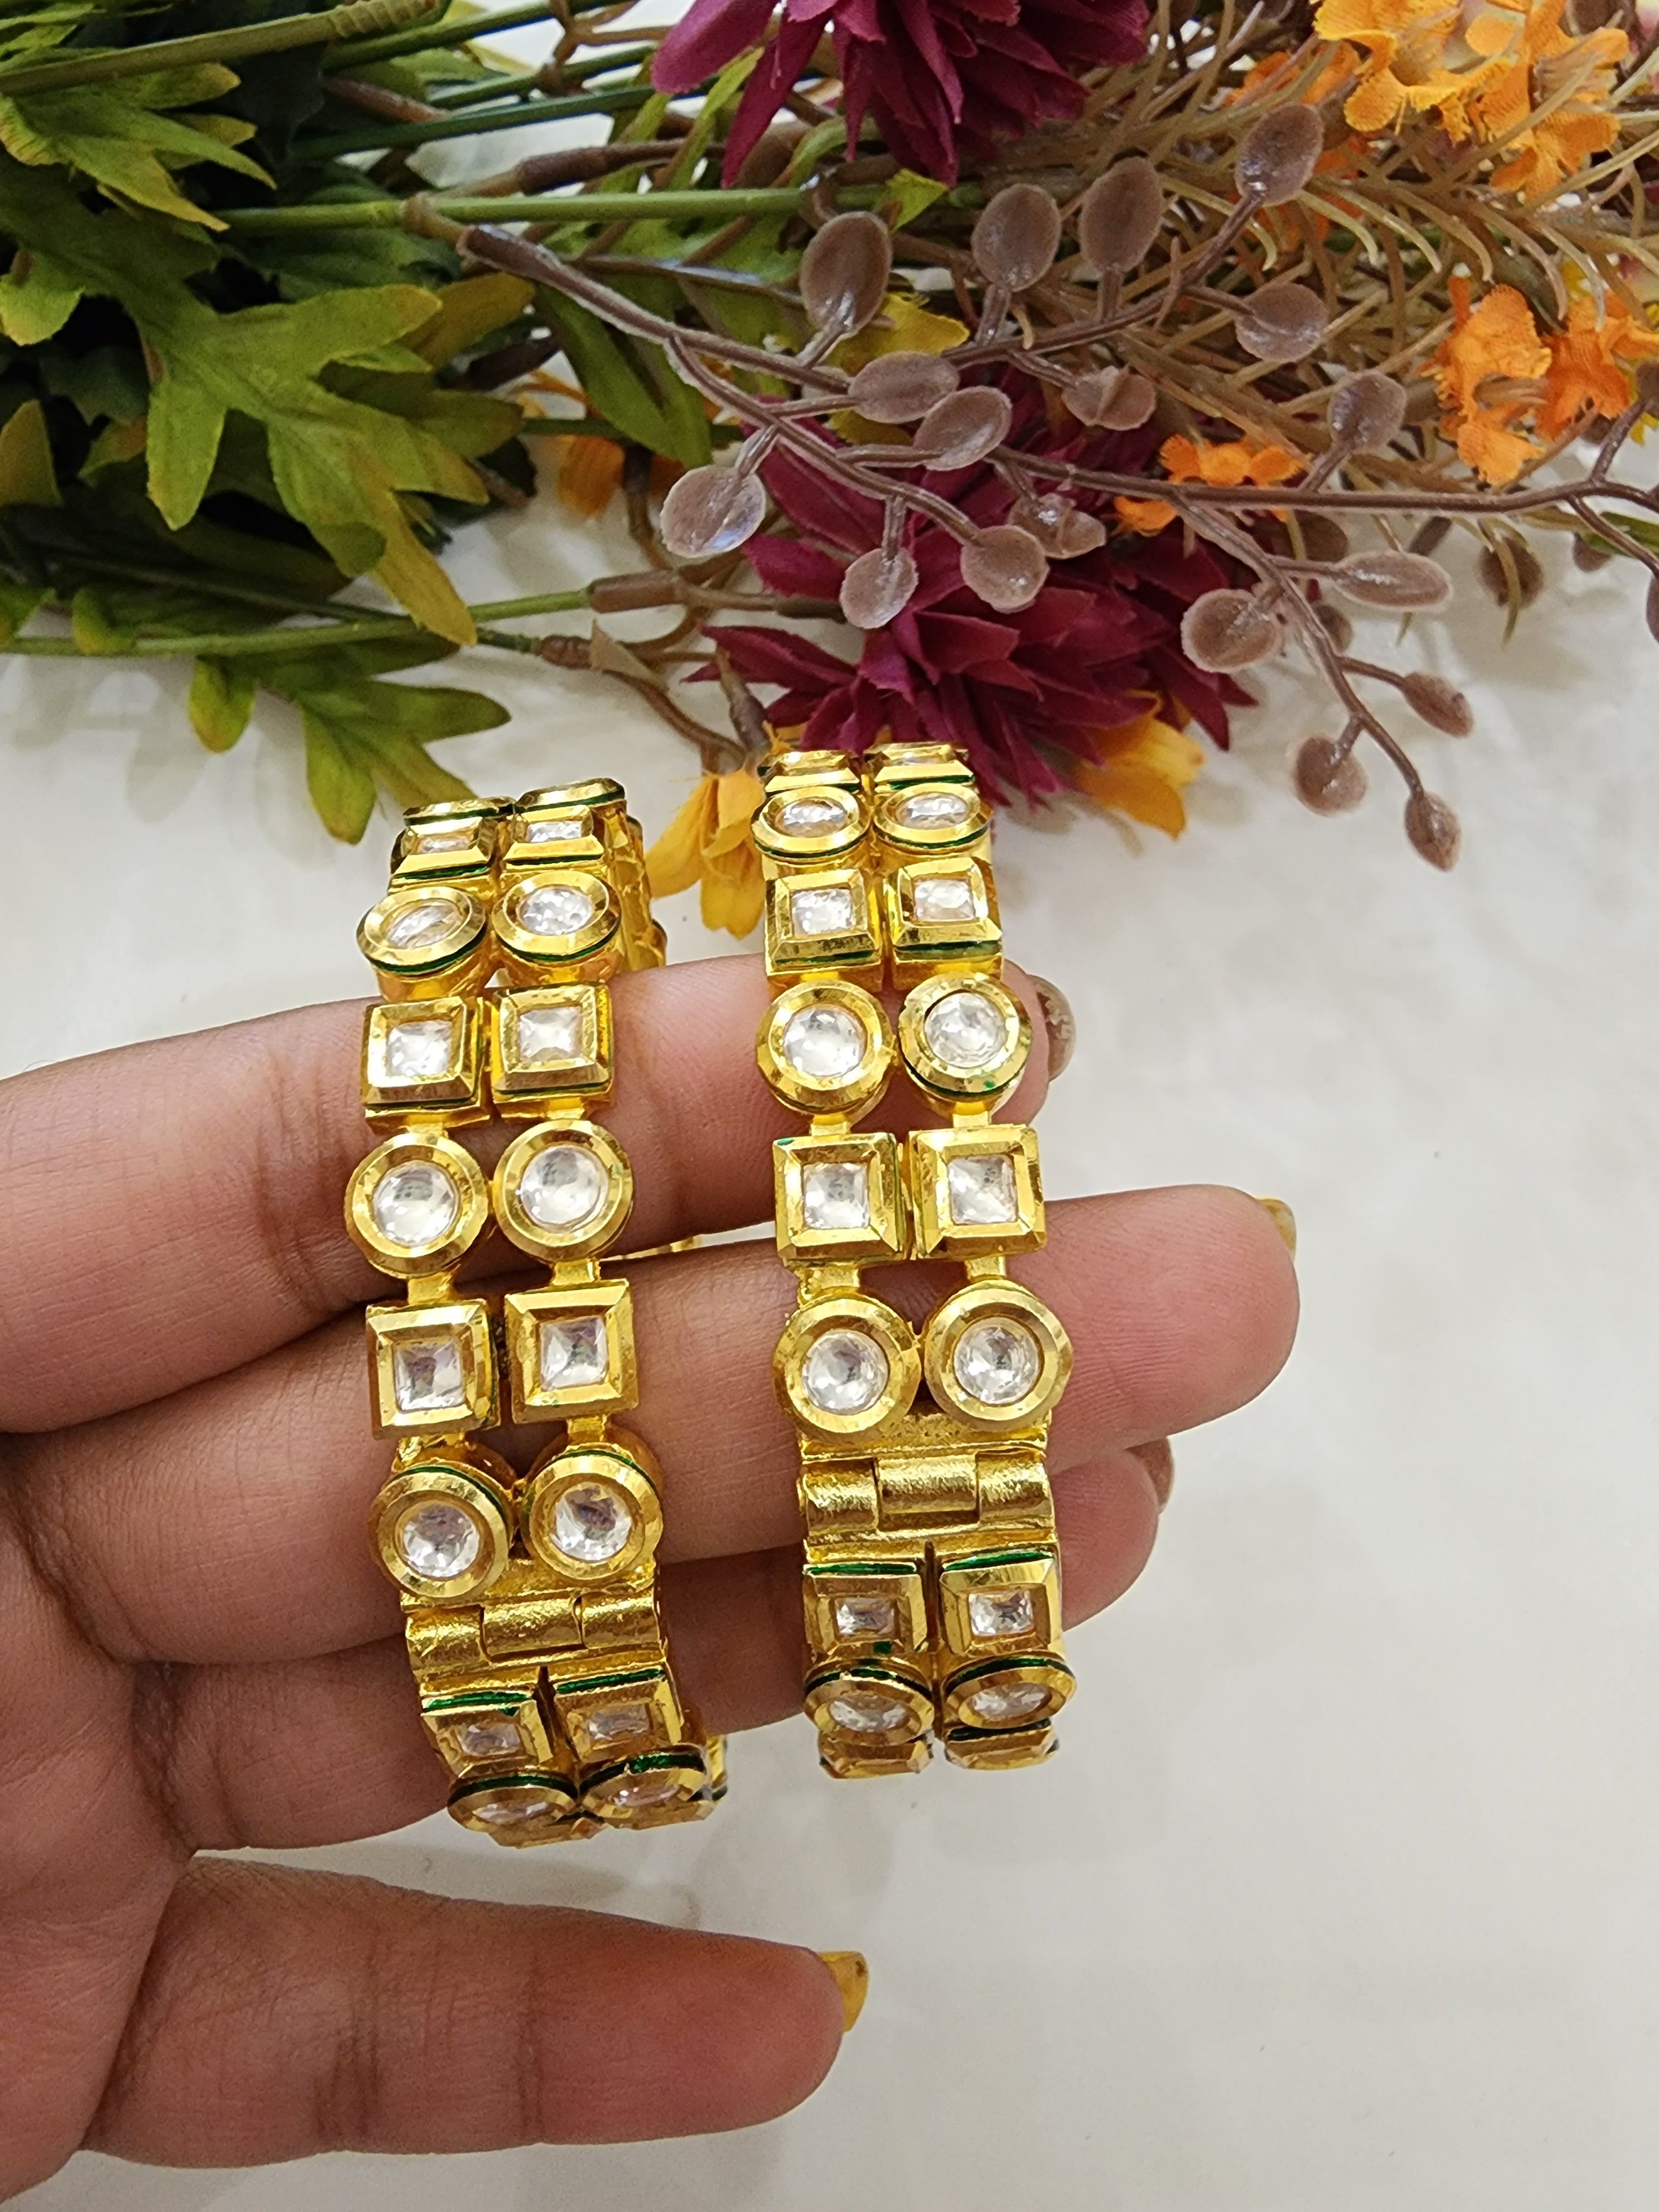 Kundan gold plated bangles